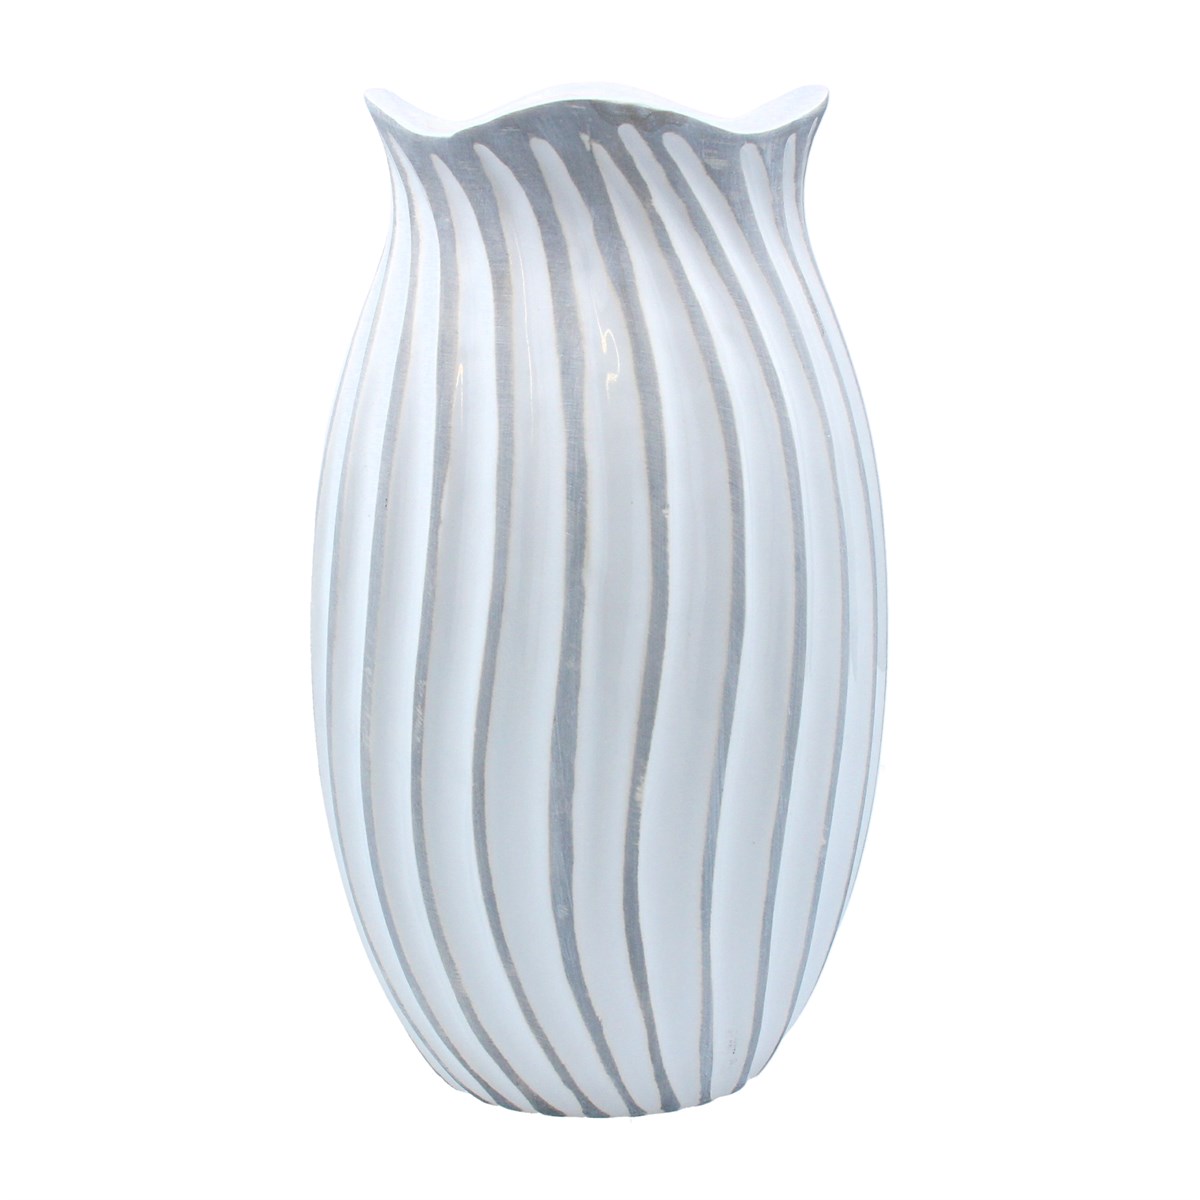 White and Grey Ceramic Wave Vase by Gisela Graham